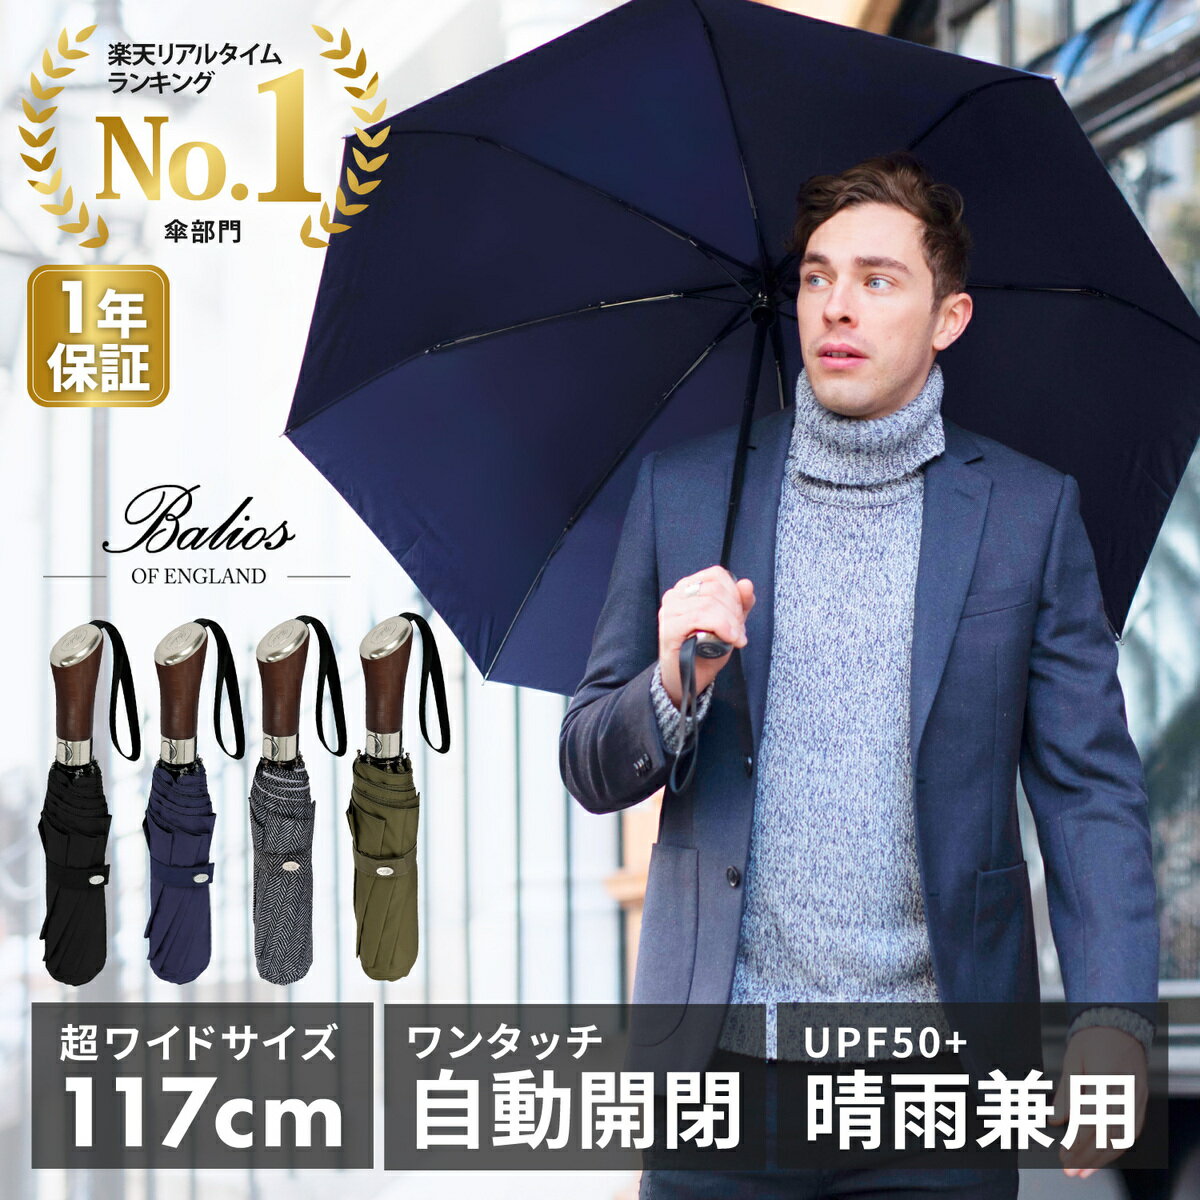 【雑誌GQ掲載】欧米で高い評価を得ている英国傘ブランドBaliosの折りたたみ傘です。上質なローズウッドハンドルは手に馴染みやすく、高級感もあり贈り物に最適です。